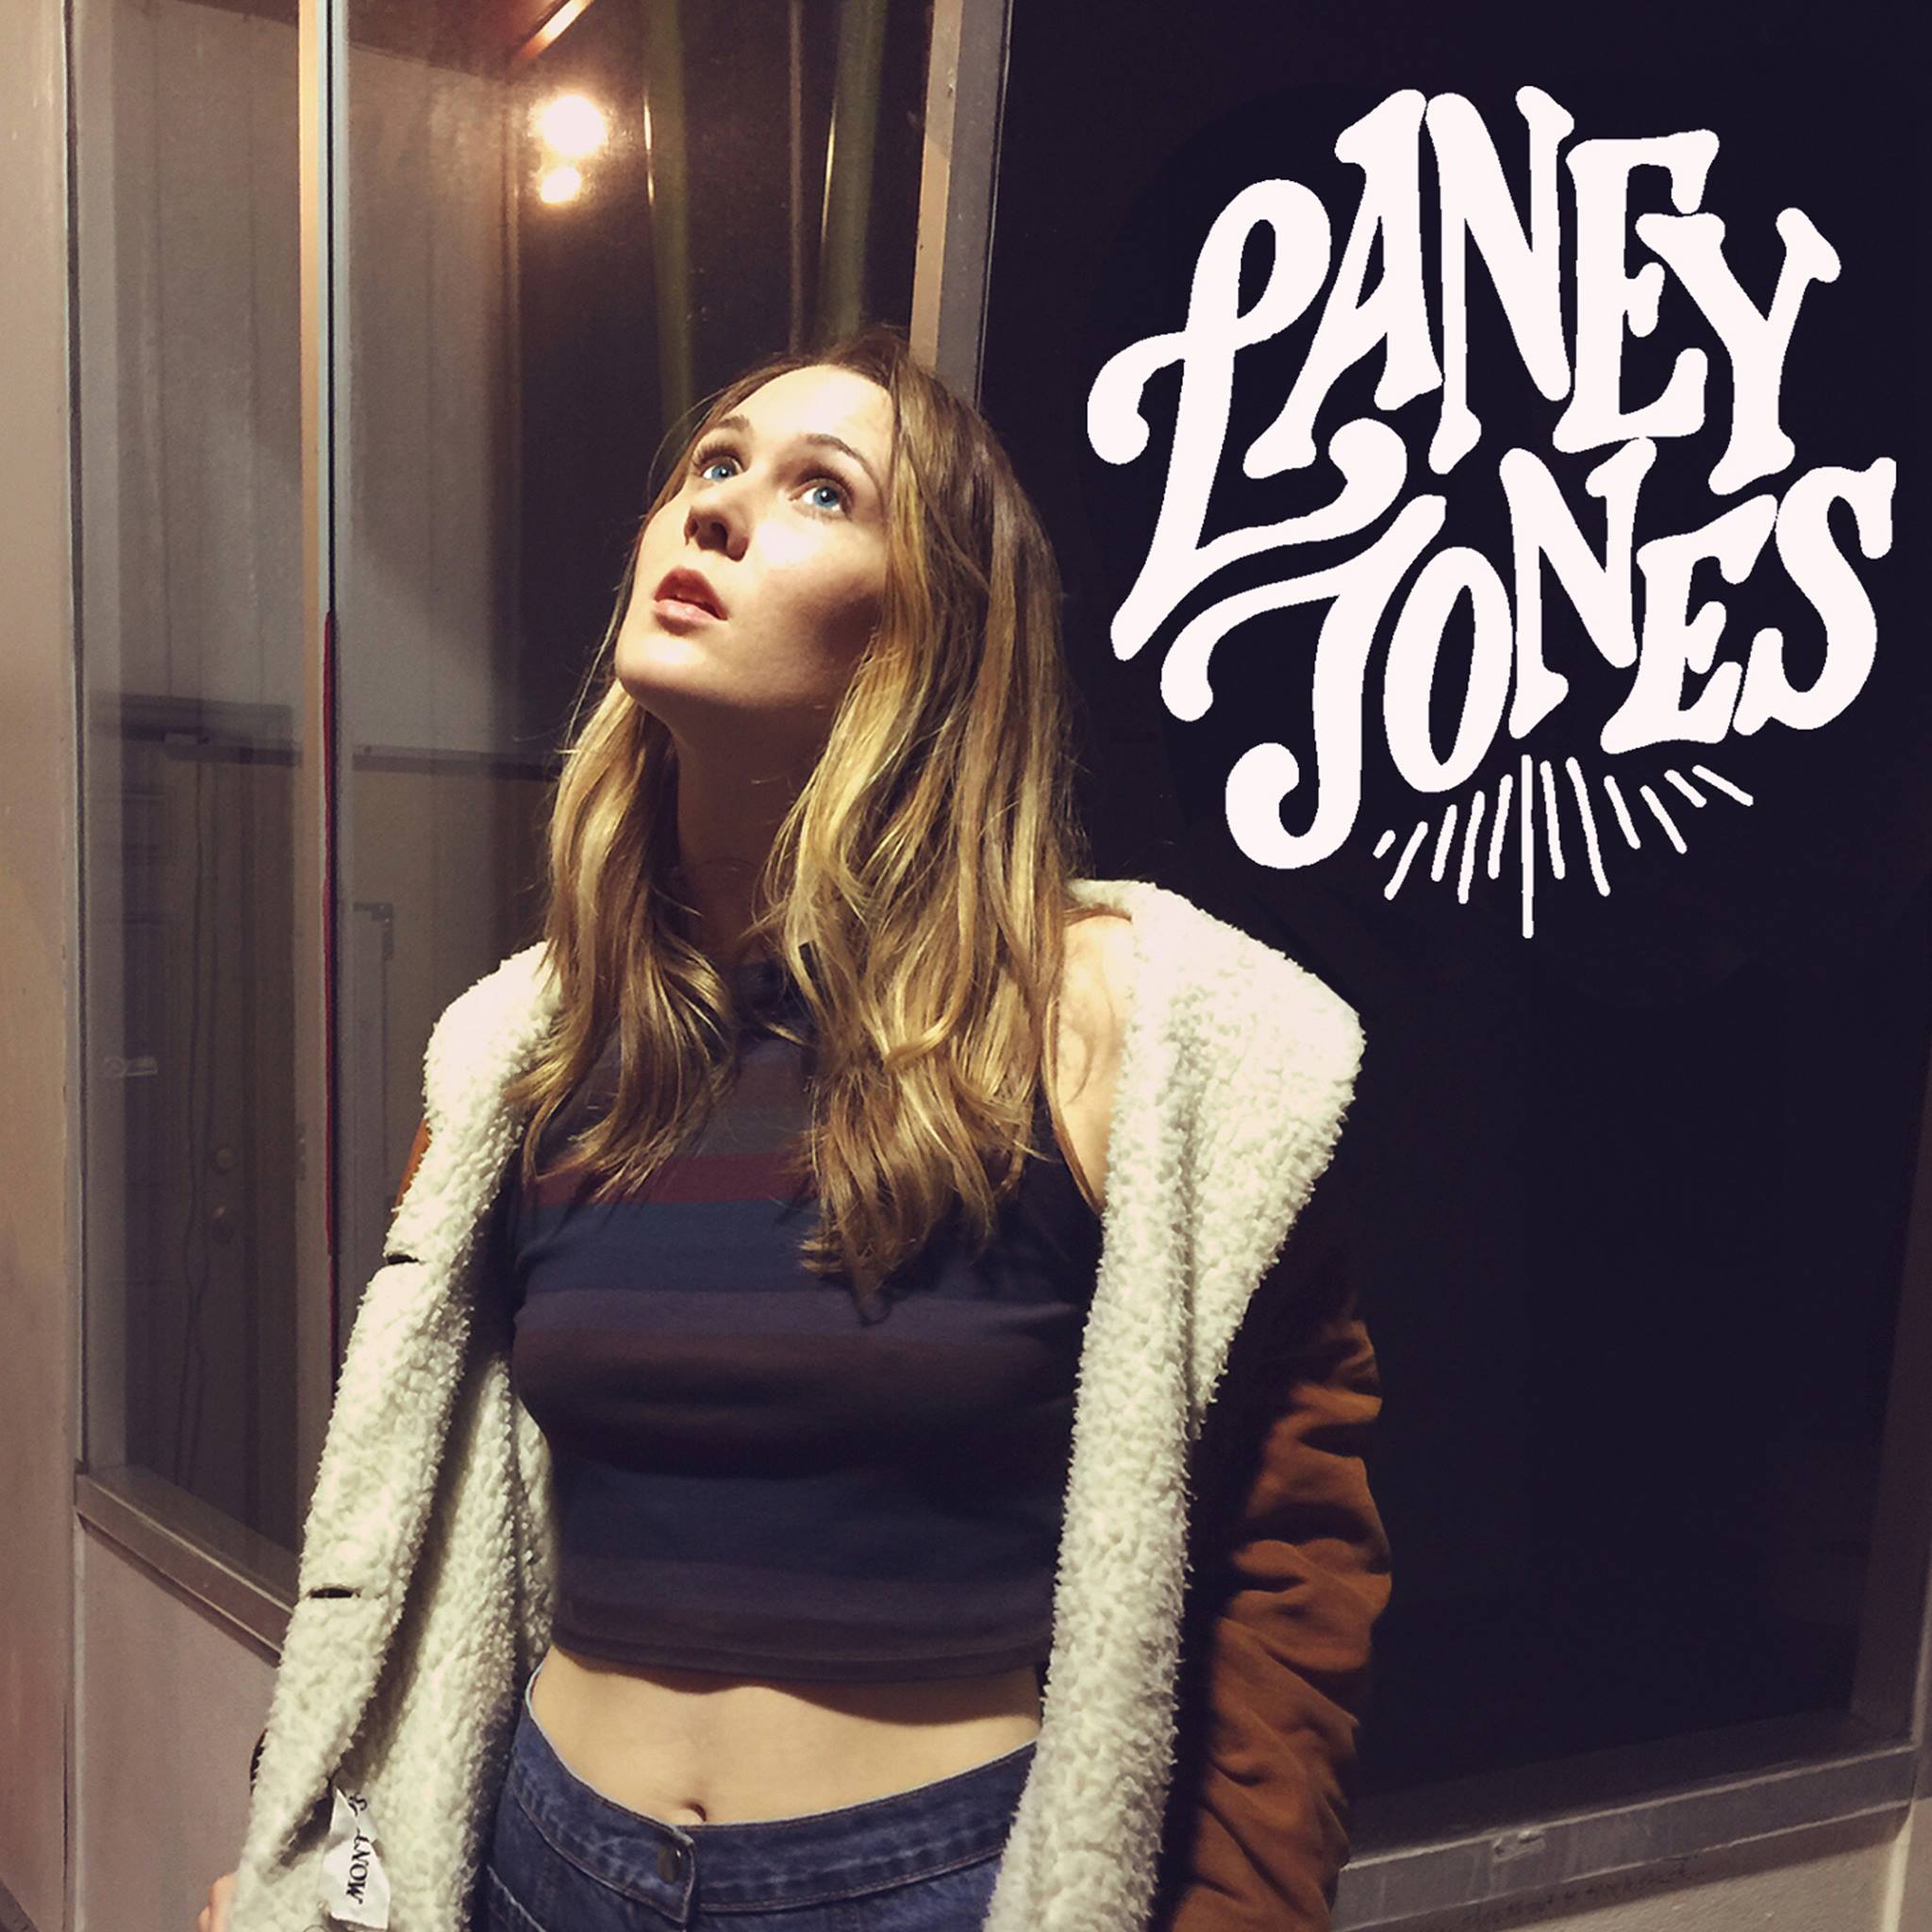 Laney Jones – Run Wild Lyrics